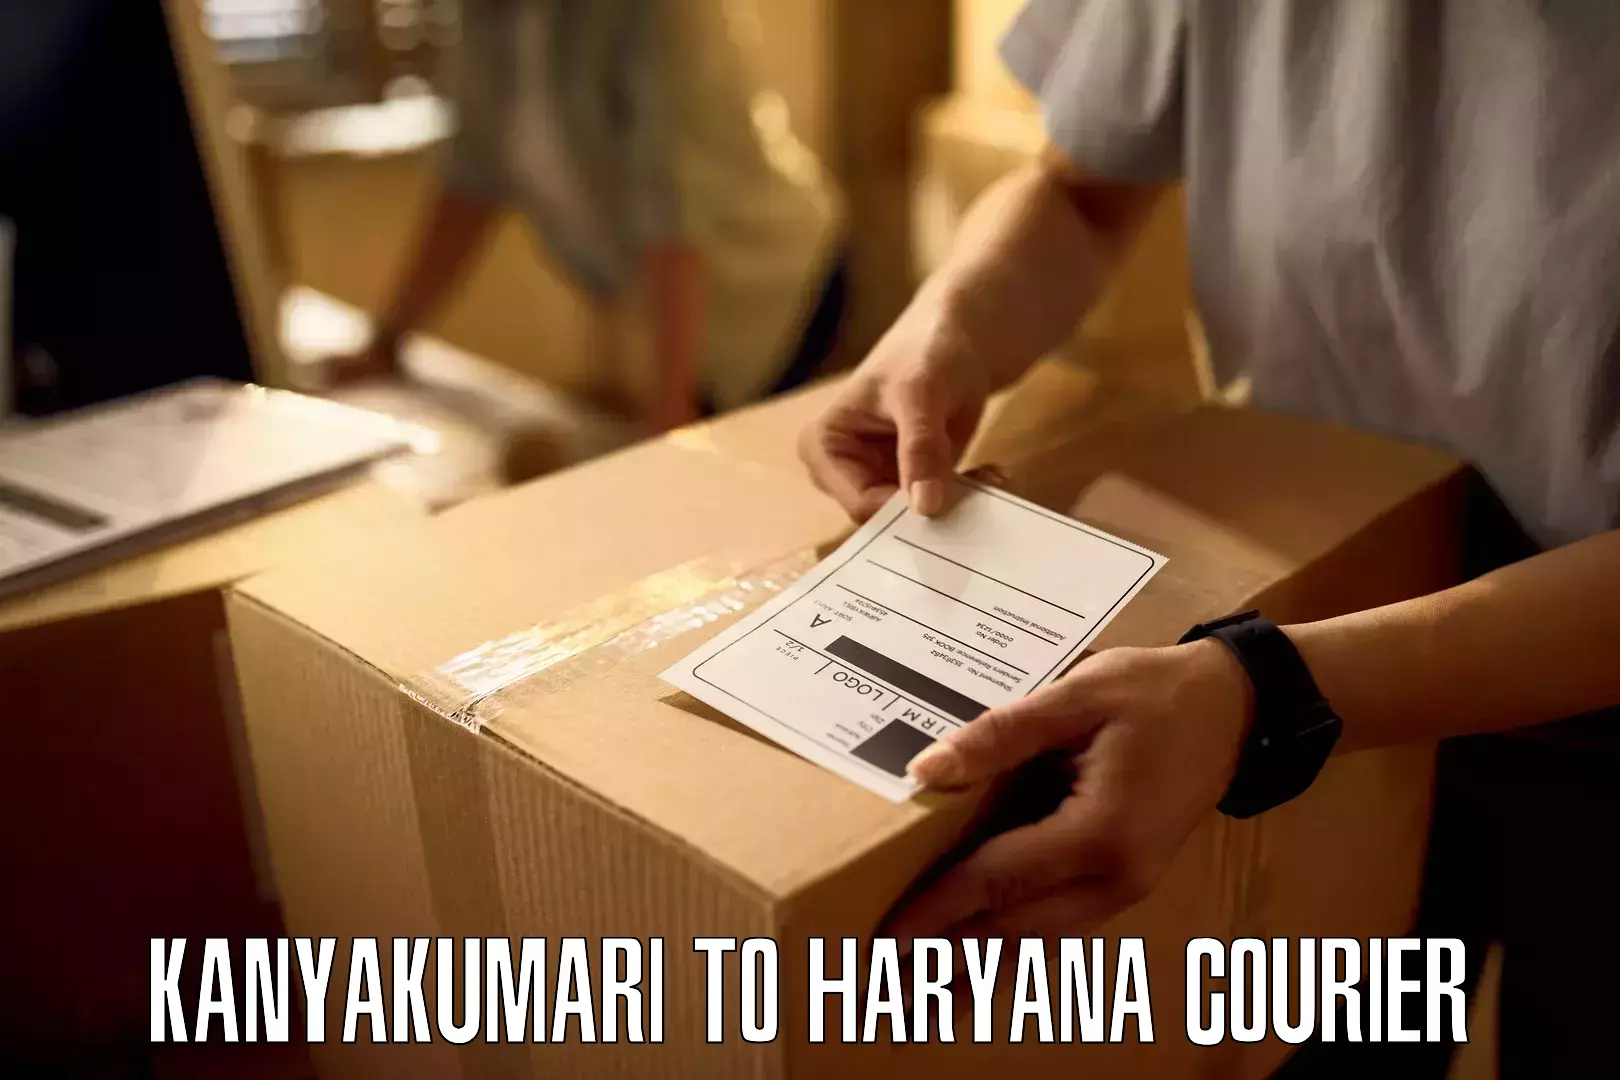 Next-day delivery options Kanyakumari to Pataudi